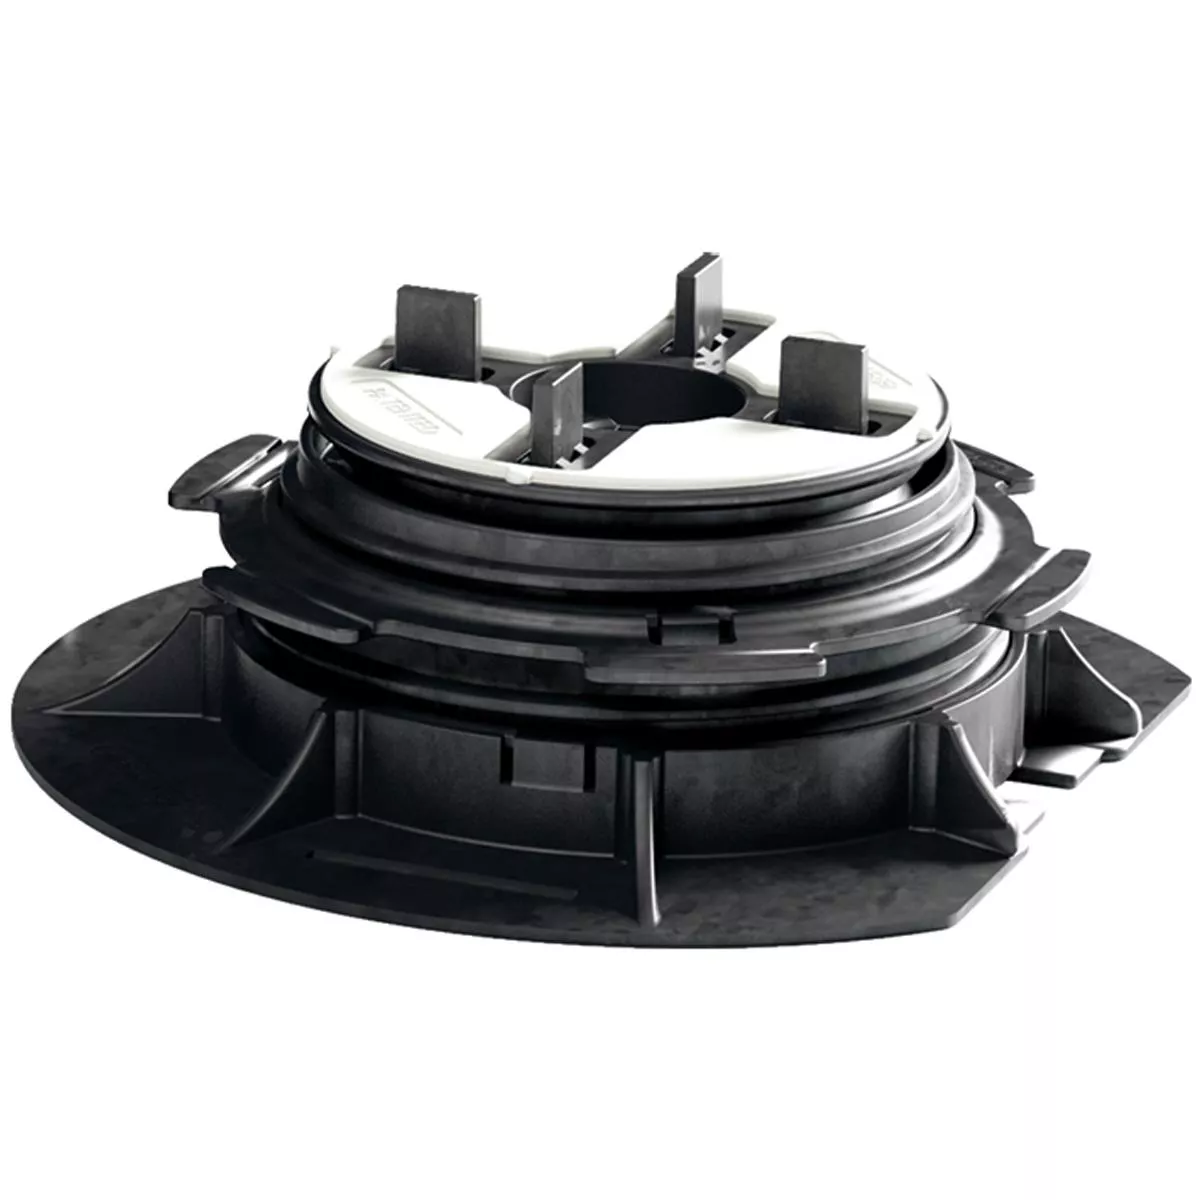 Adjustable pedestal black 3 - 6.5 cm